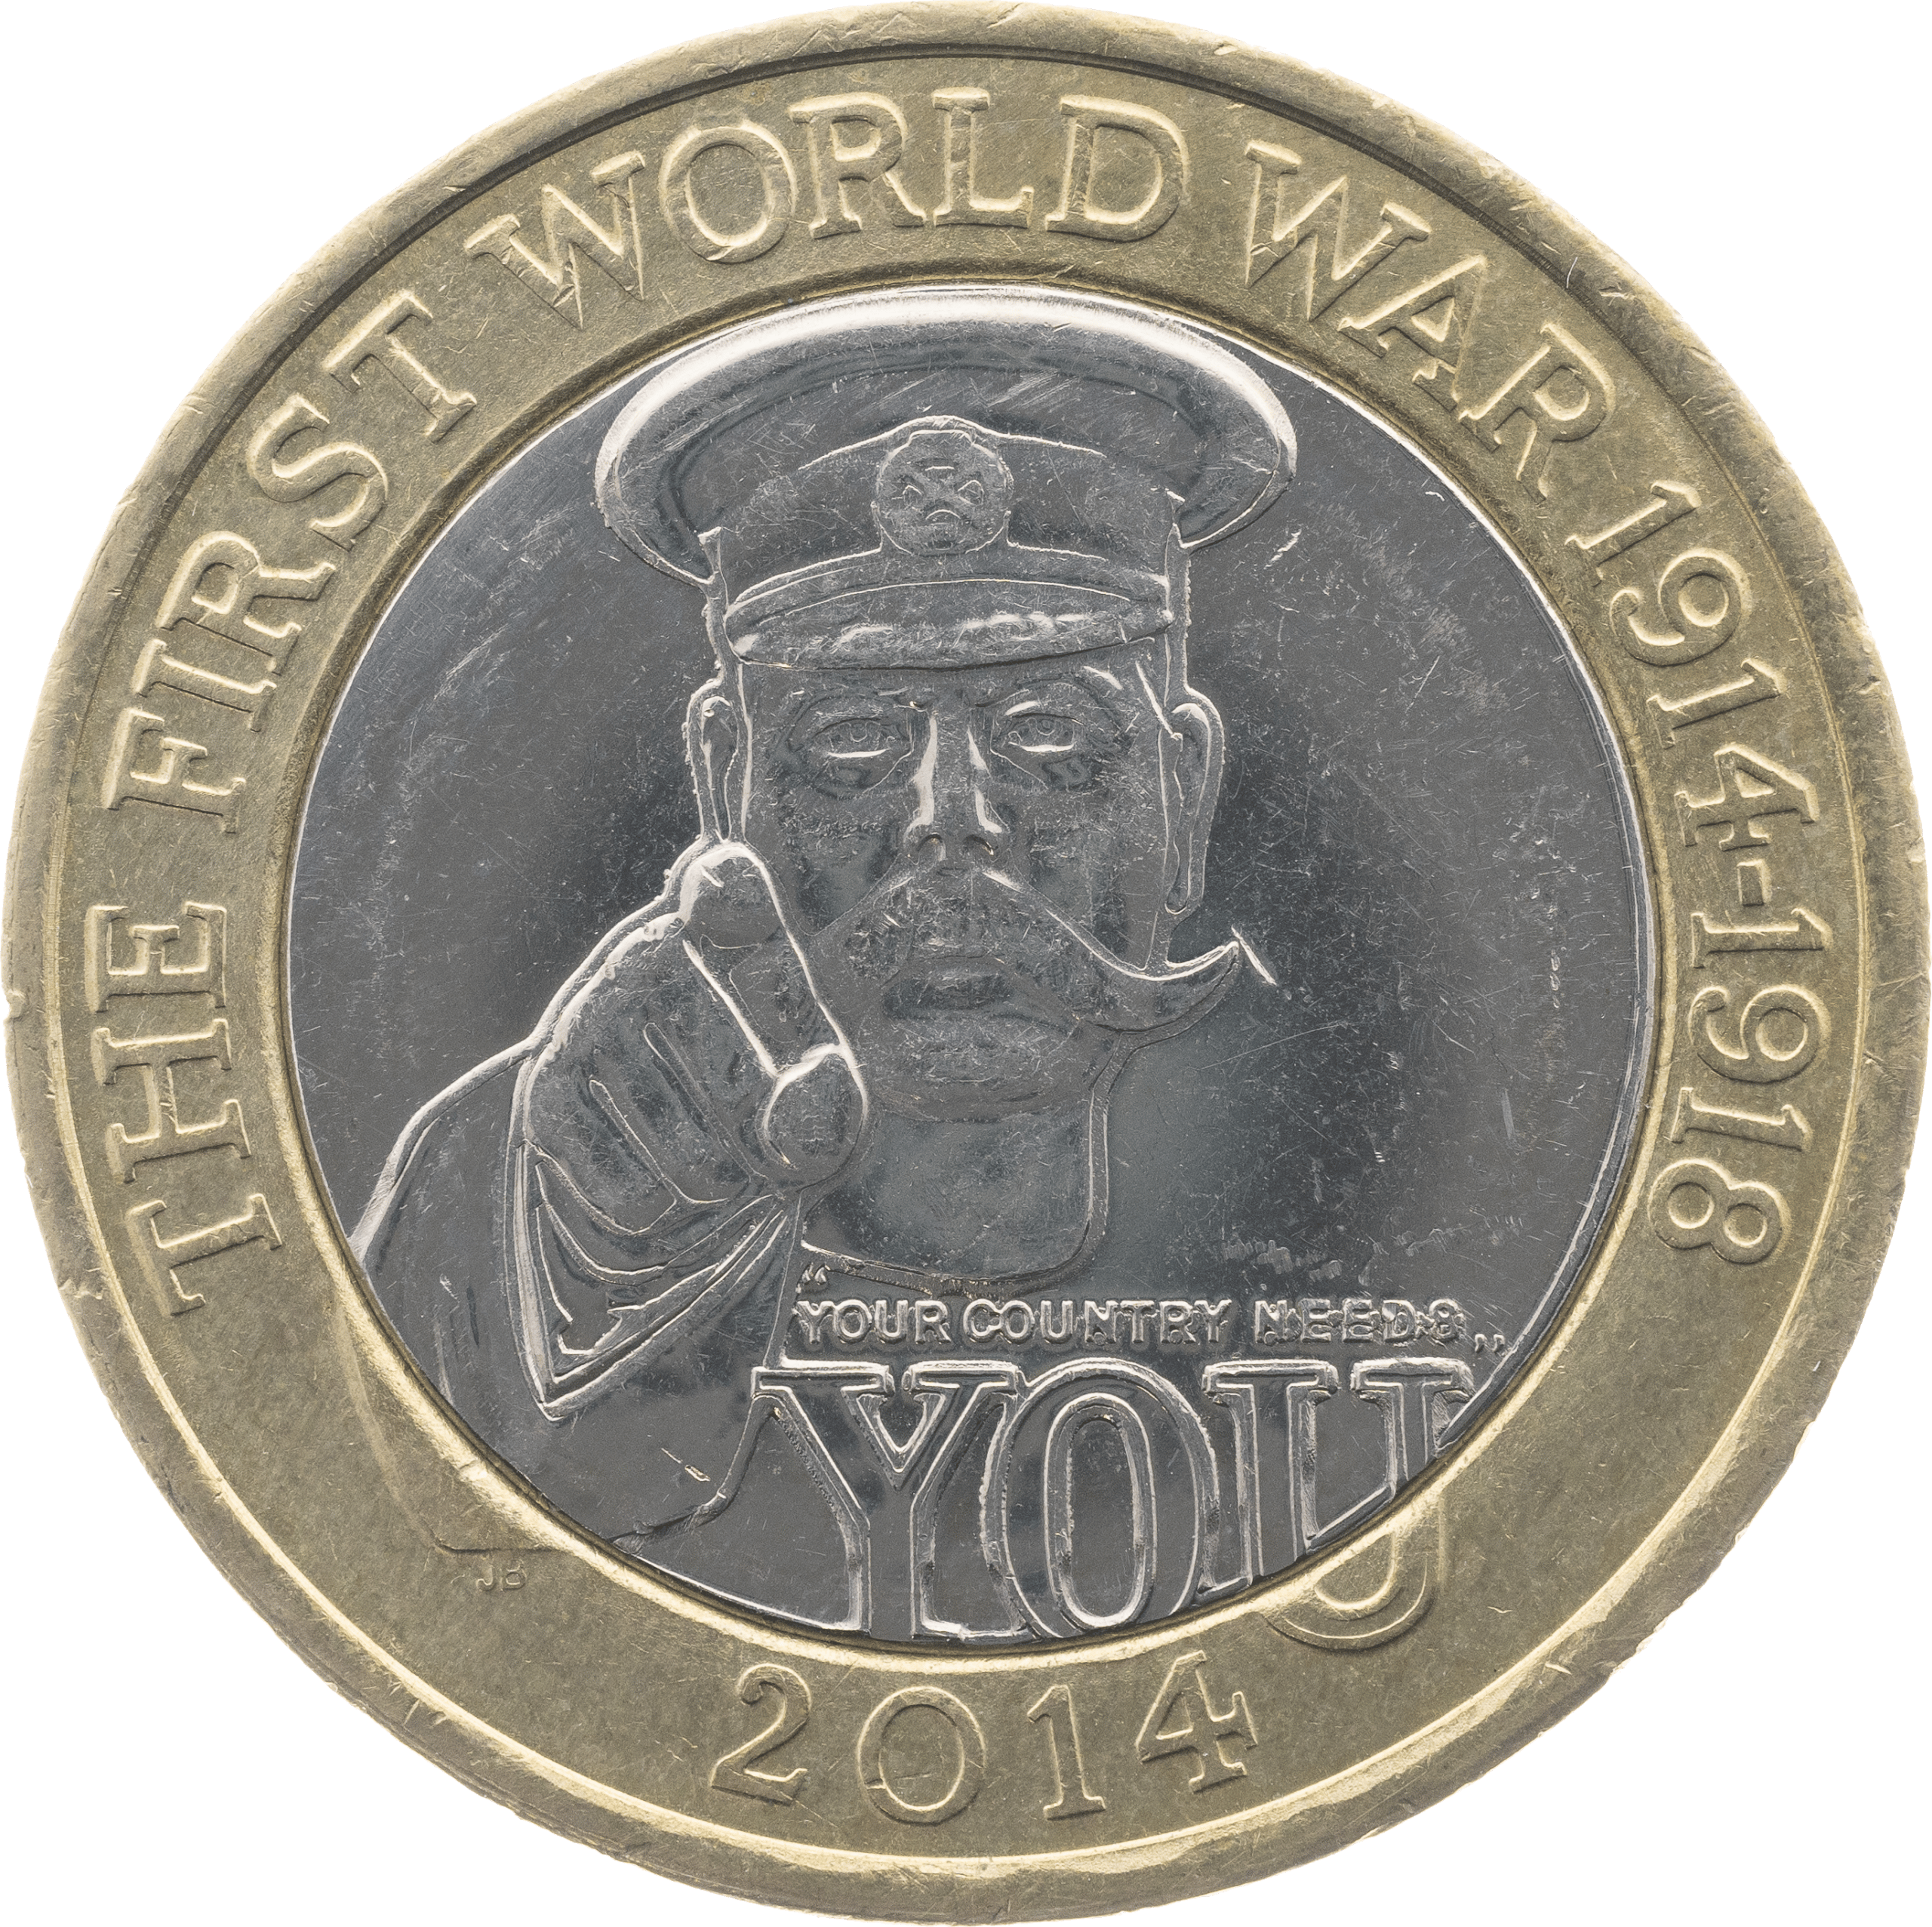 2014 First World War £2 Coin Design